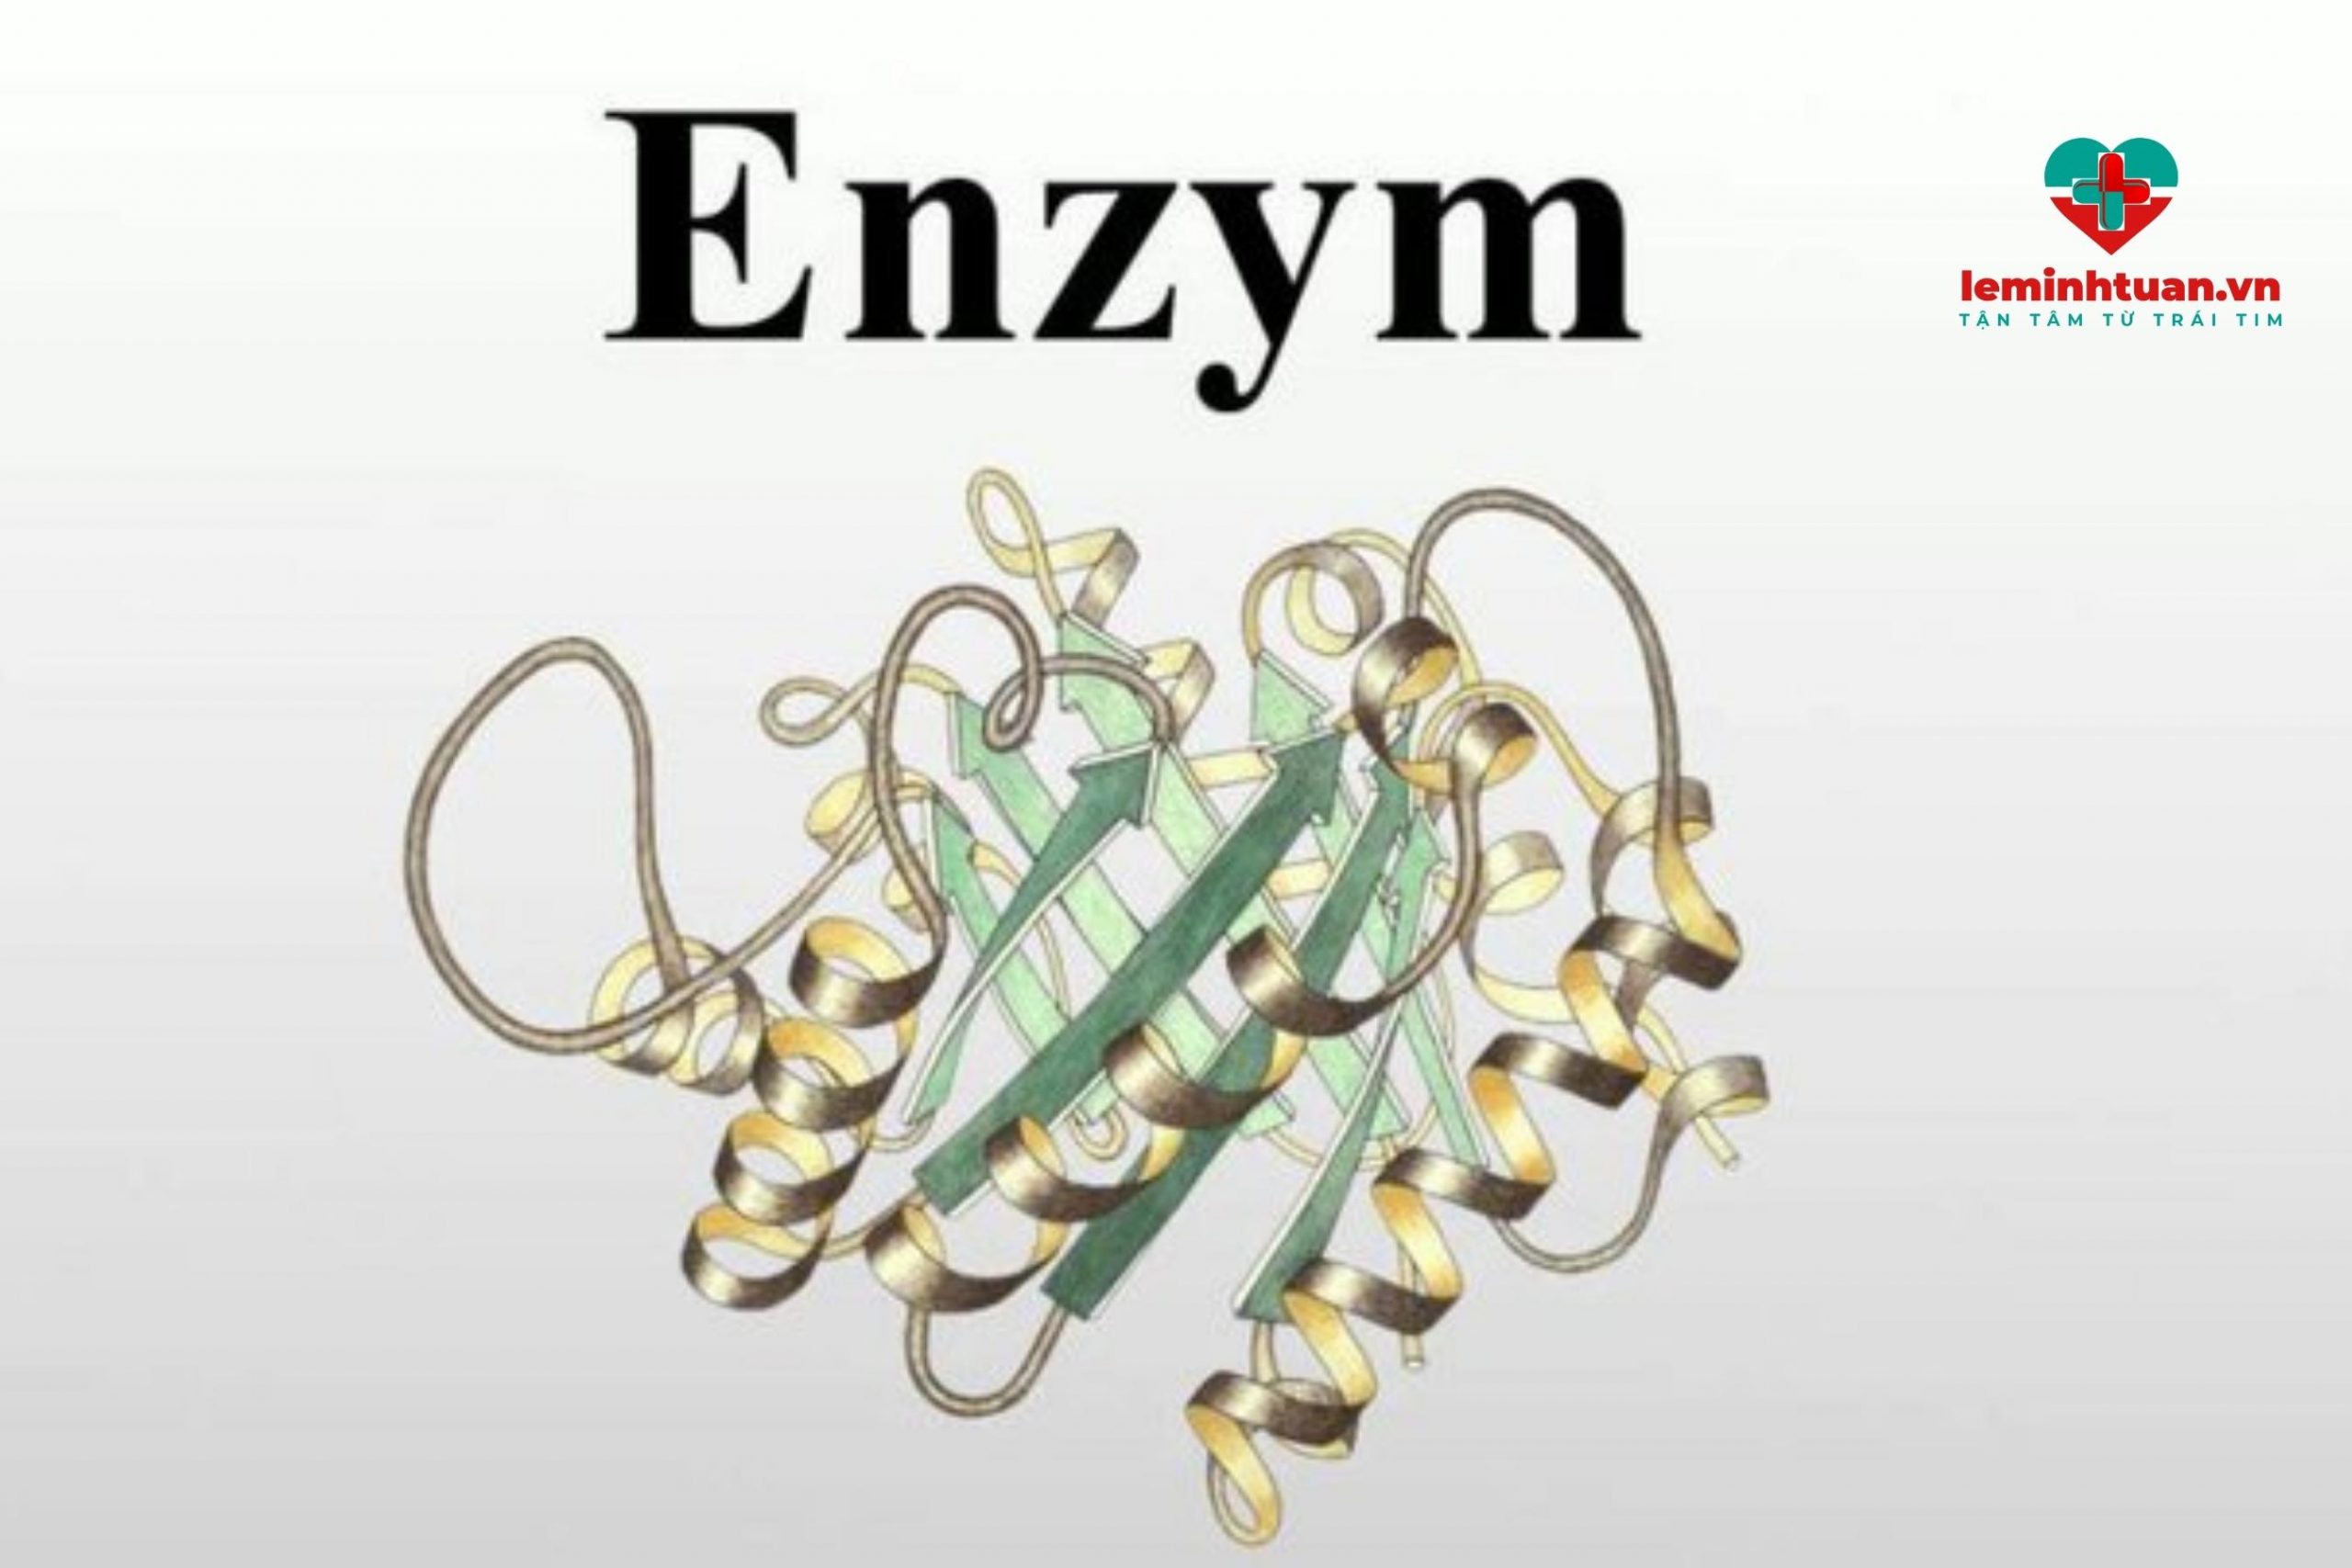 Enzym tiêu hóa ở ruột non gồm những enzym nào?